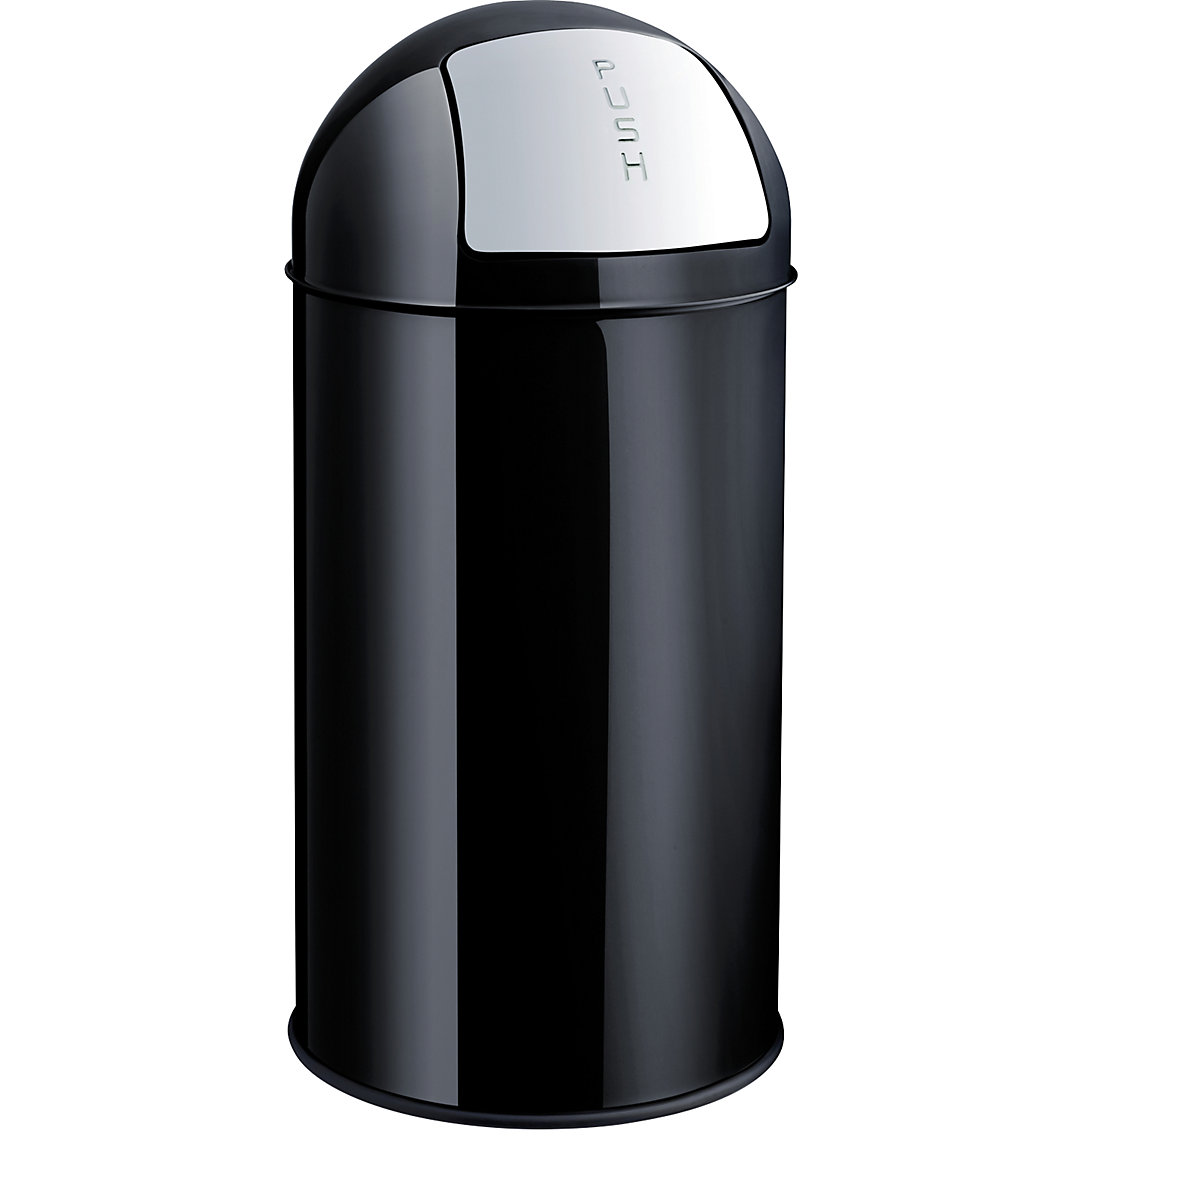 Spremnik za otpad od čelika s otvaranjem na pritisak – helit, volumen 50 l, VxØ 745 x 360 mm, u crnoj boji-5